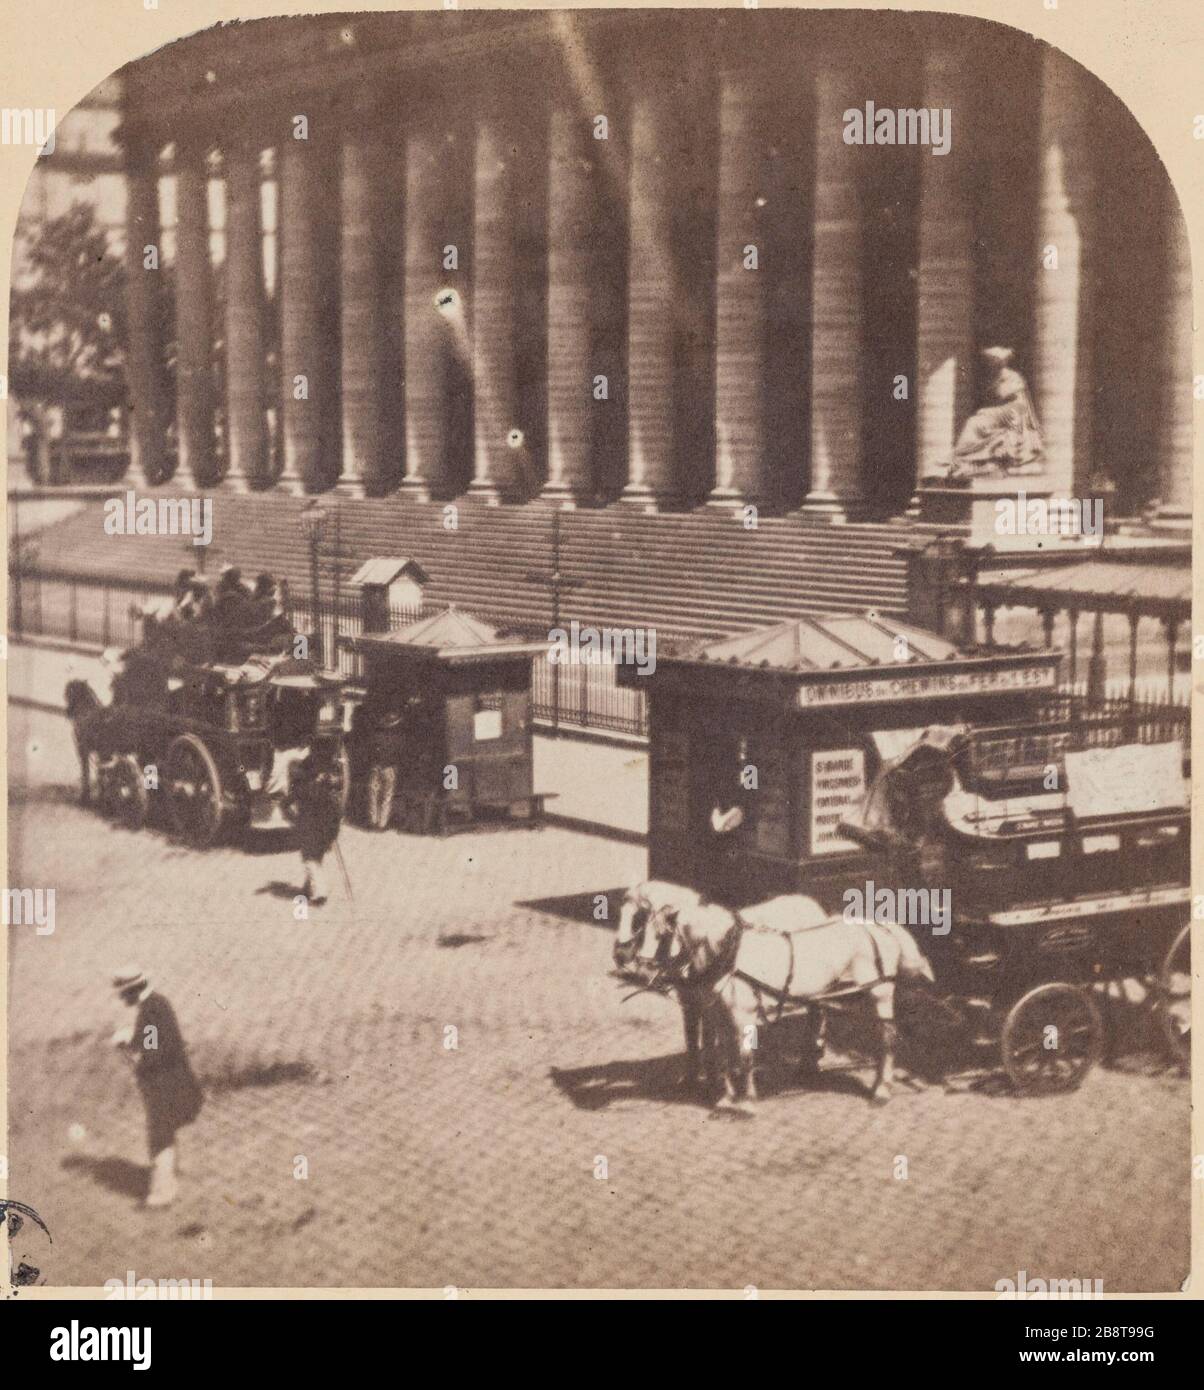 The Stock Exchange, 2nd district, Paris. View right 'La Bourse'. Vue droite. Vue stéréoscopique, papier albuminé. Paris (IIème arr.), 1850-1900. Photographie anonyme. Paris, musée Carnavalet. Stock Photo